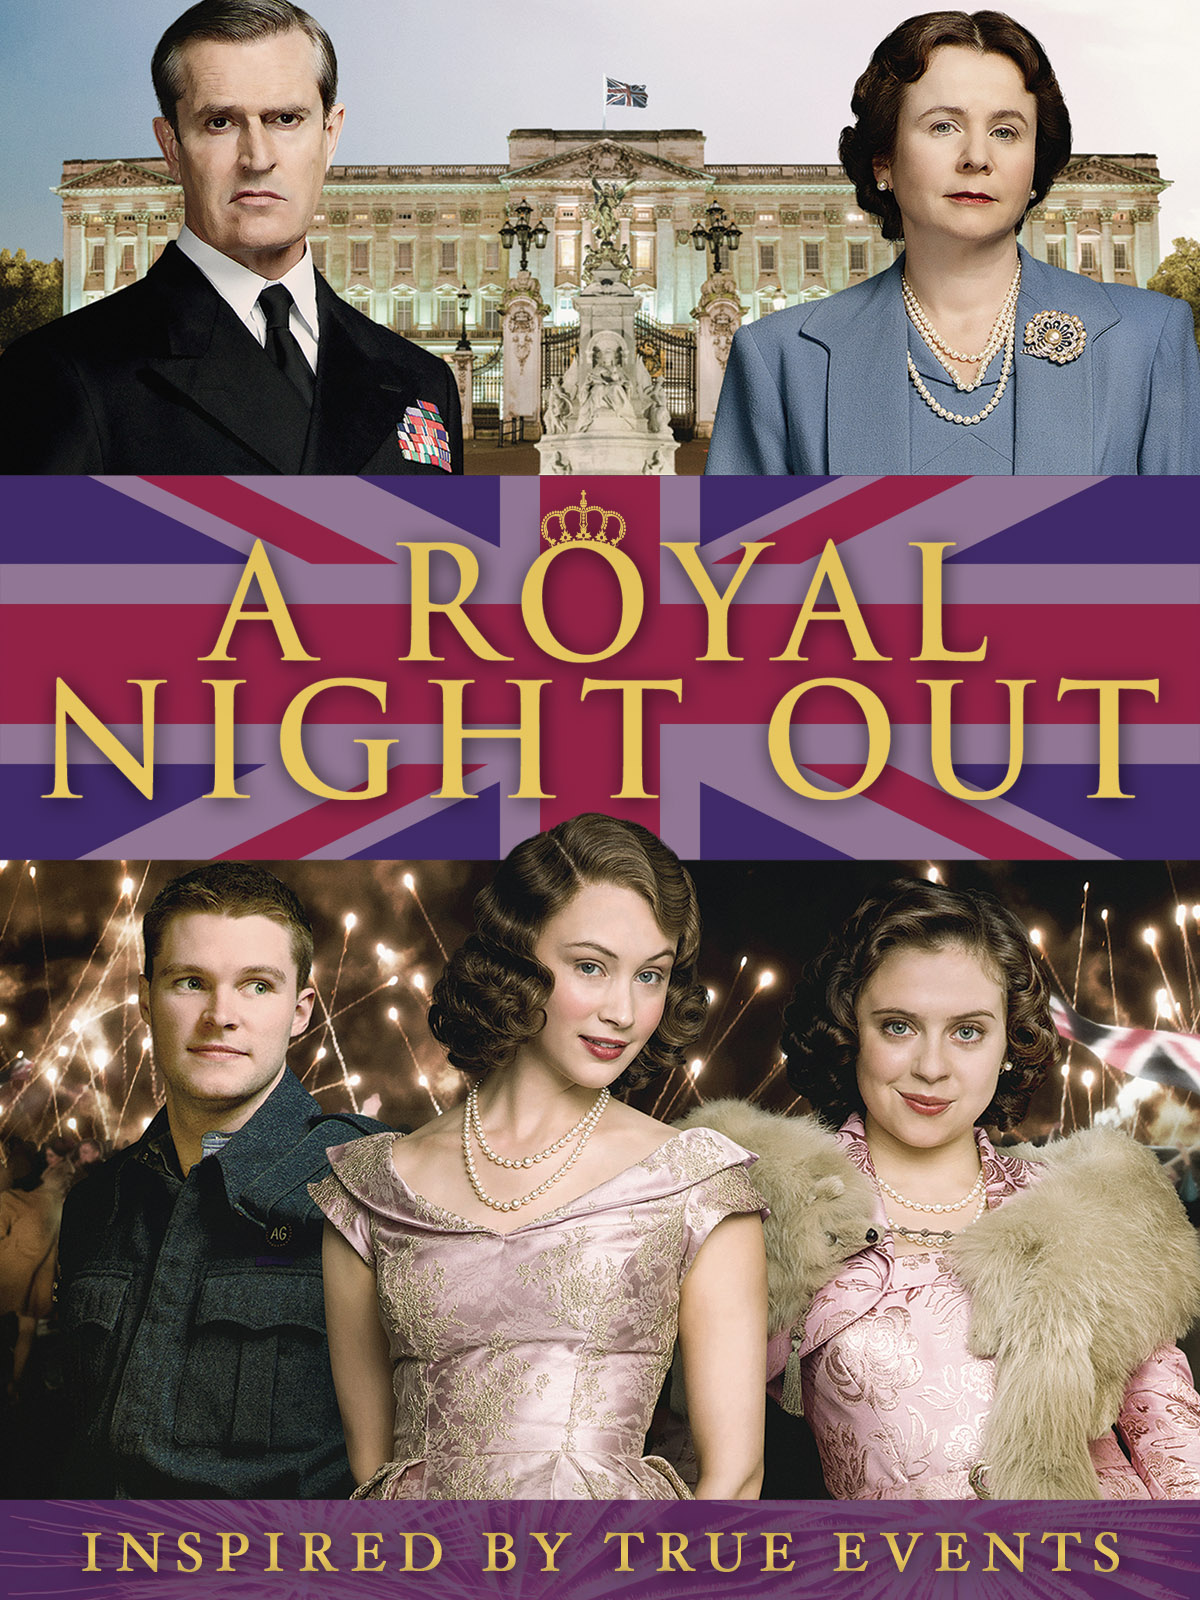 A Royal Night Out - Wikipedia